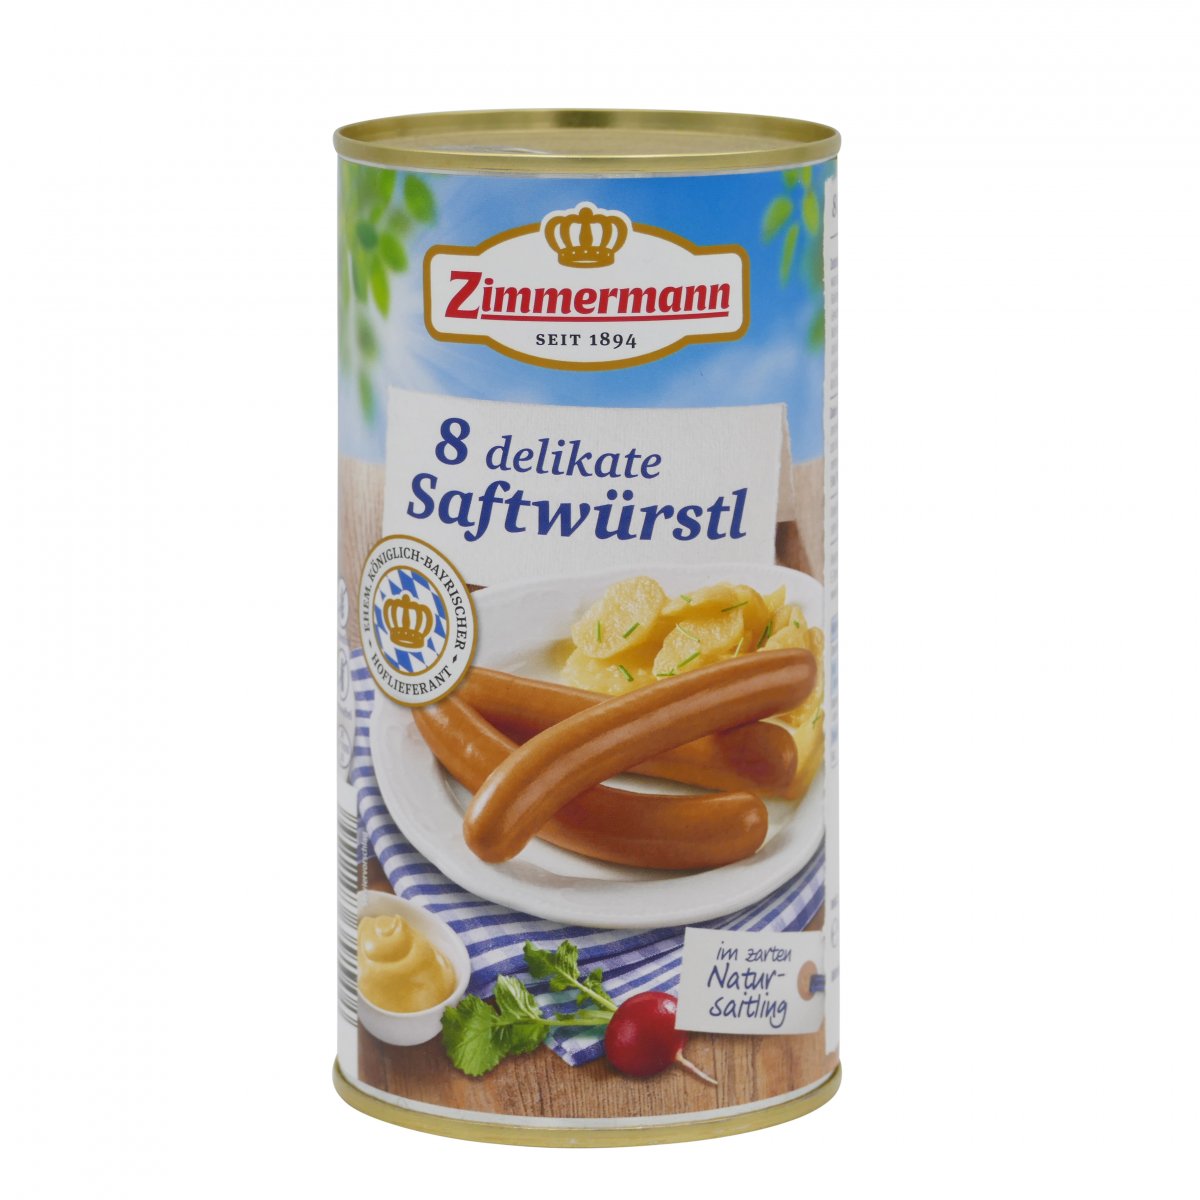 Zimmermann 8 delikate Saftwürstel 8 Wurstel Delicati gluten-free